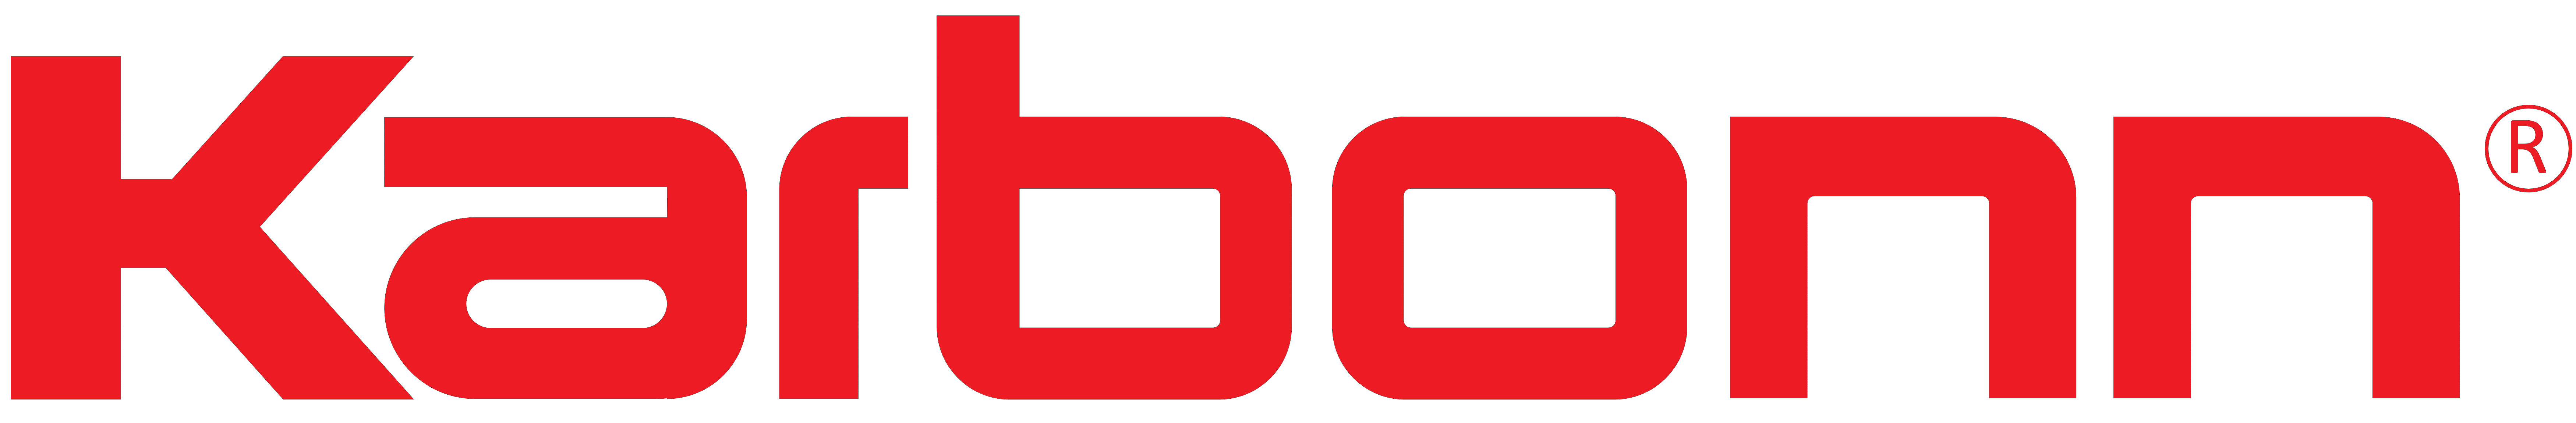 Karbonn Mobiles logo, logotype